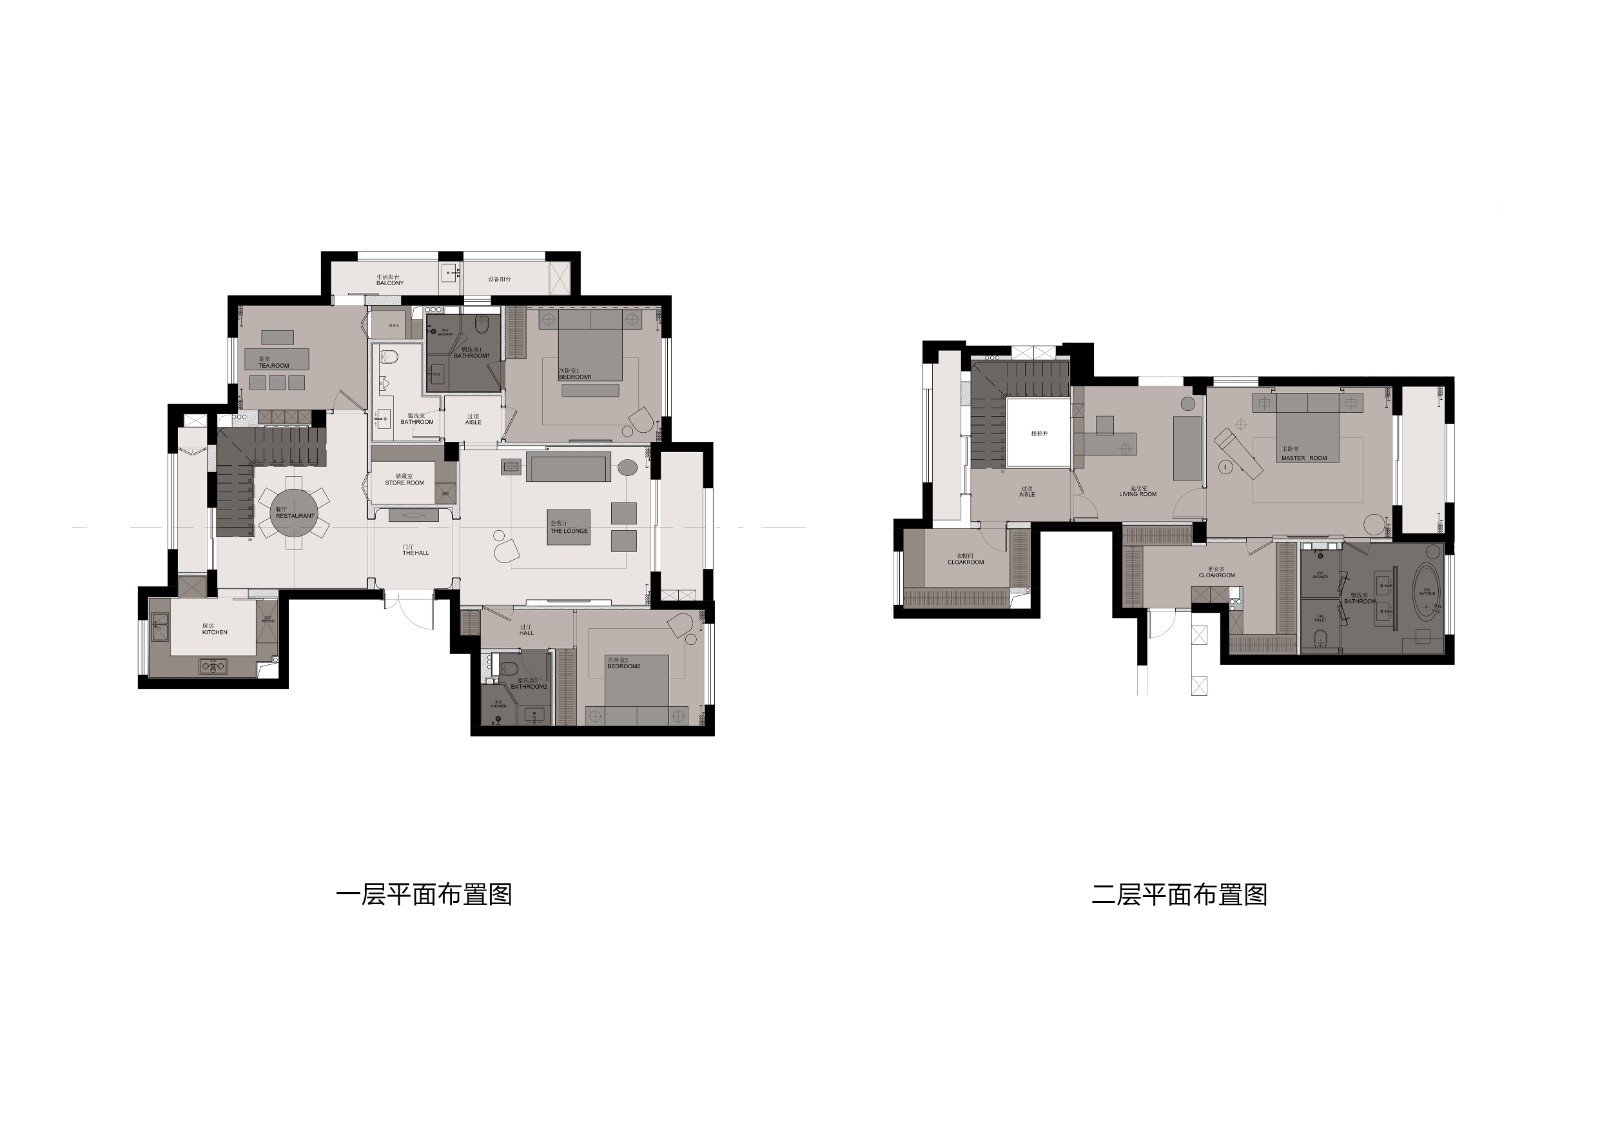 130现代三房装修效果图,功能与美学的平衡装修案例效果图-美广网